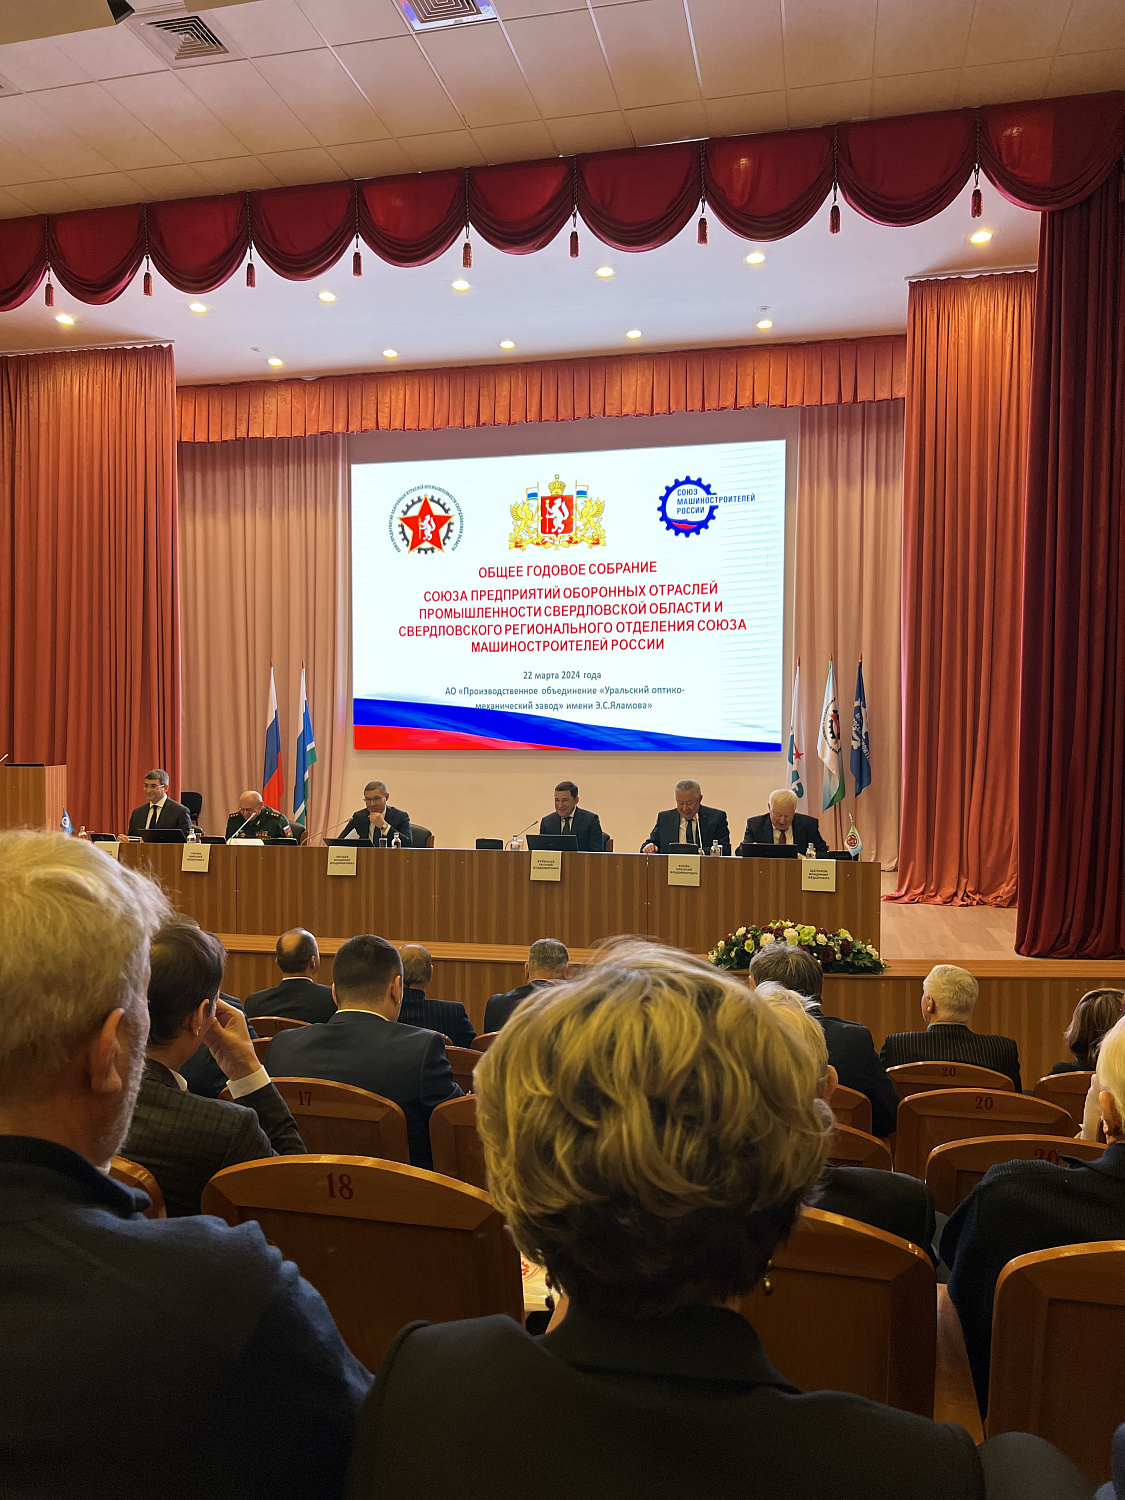 ПО «ИНСИСТЕНС» приняло участие в обще годовом собрании Союза предприятий оборонных отраслей промышленности Свердловской области